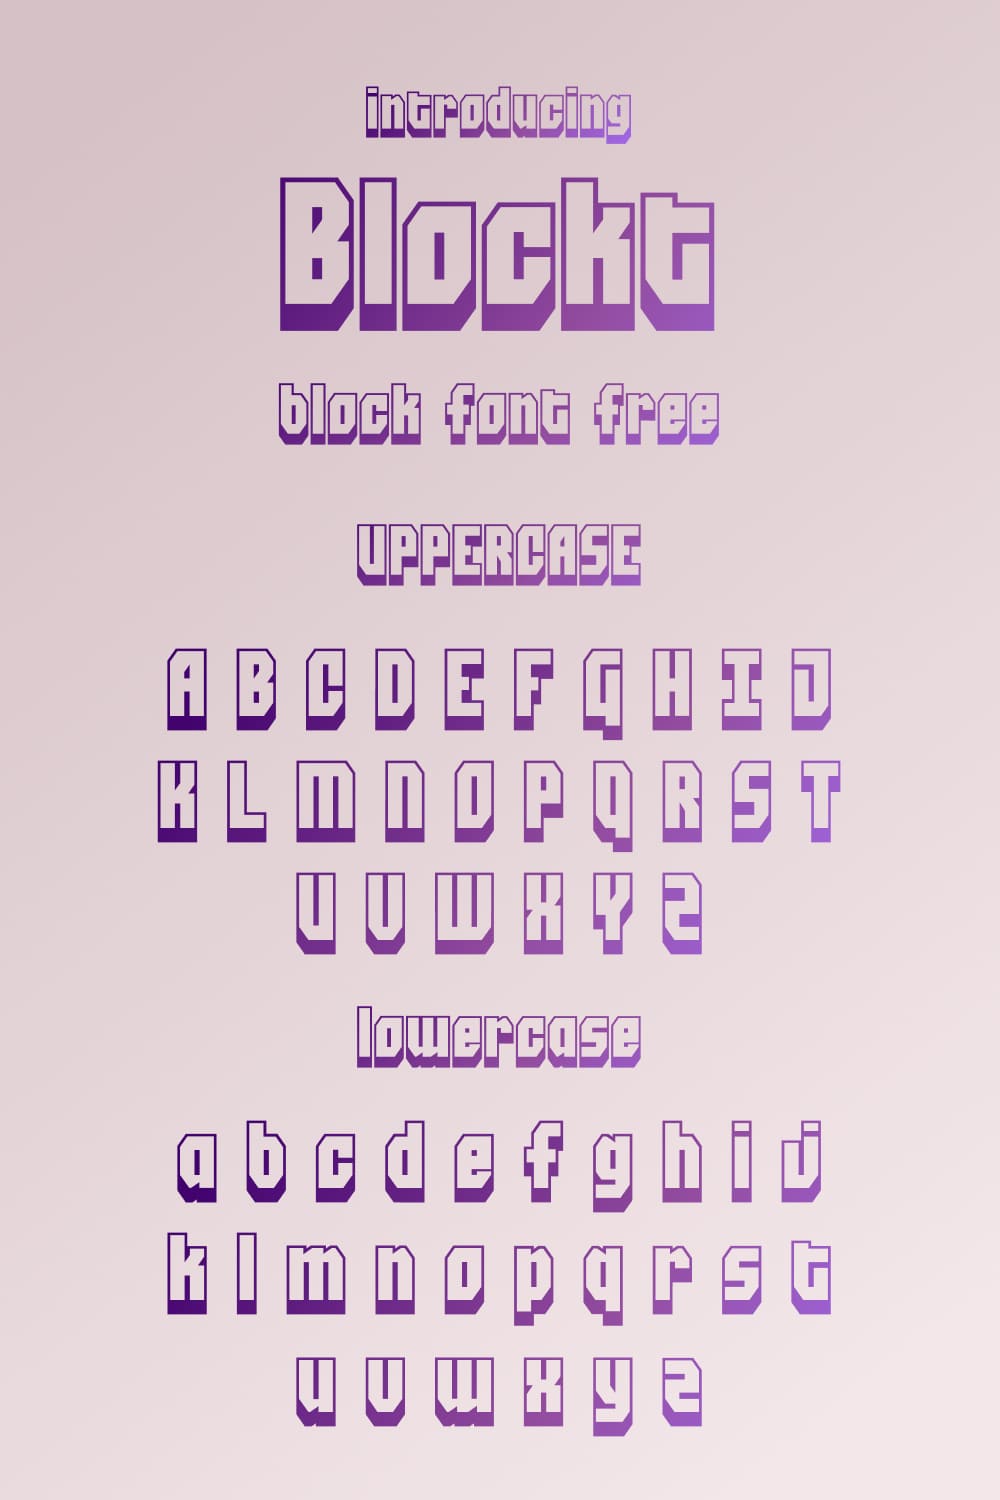 Alphabet example Pinterest Blockt block font free by MasterBundles.